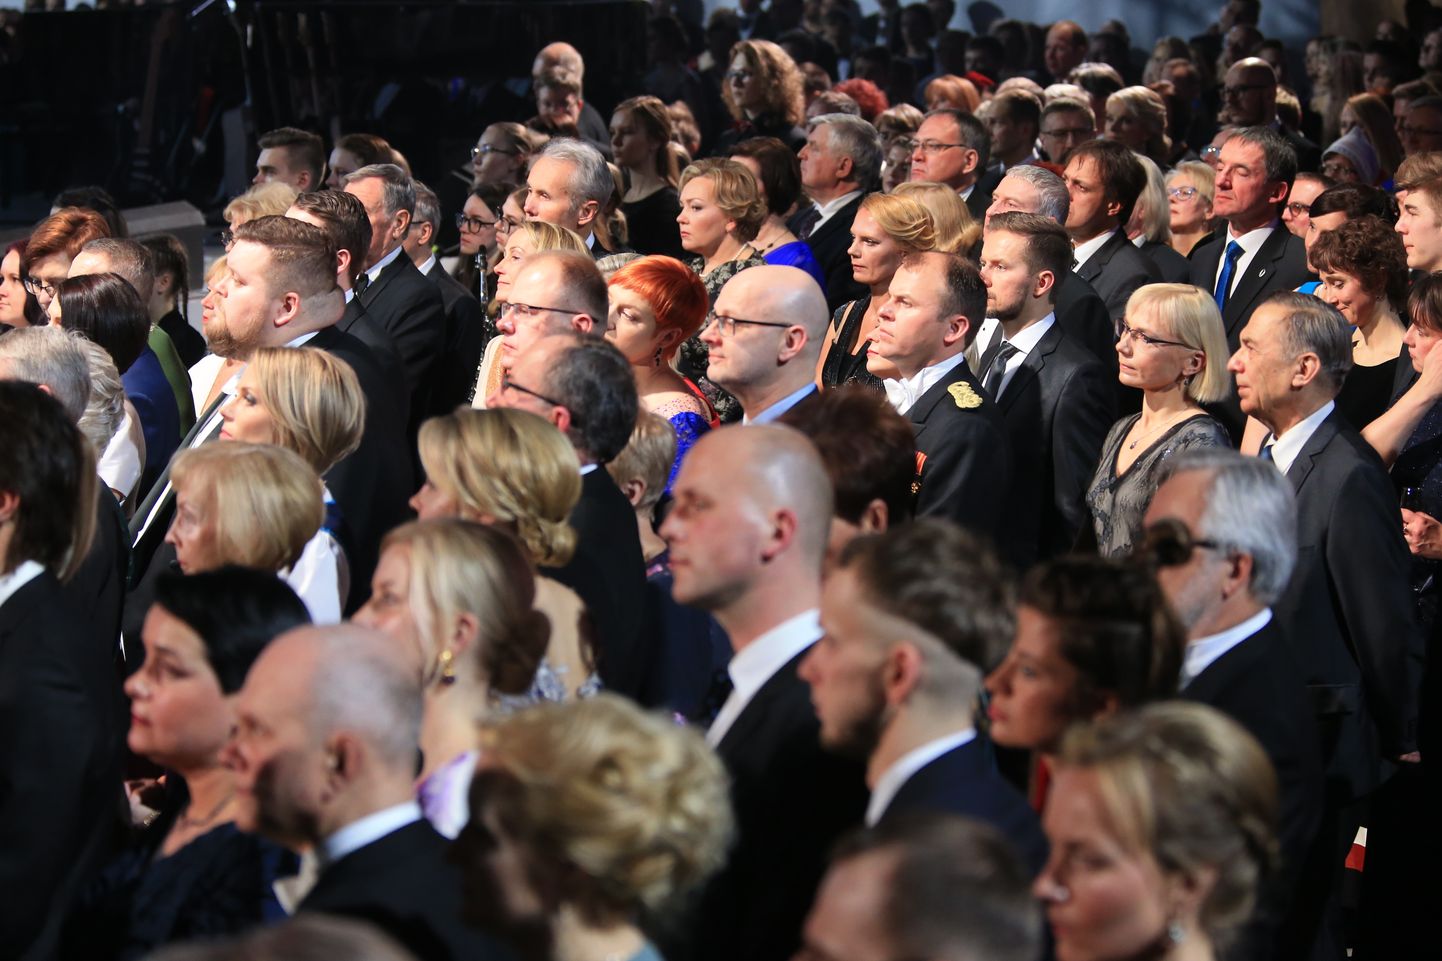 Presidendi vabariigi aastapäeva kõne ja kontsert Eesti Rahva Muuseumis. Foto on illustratiivne.